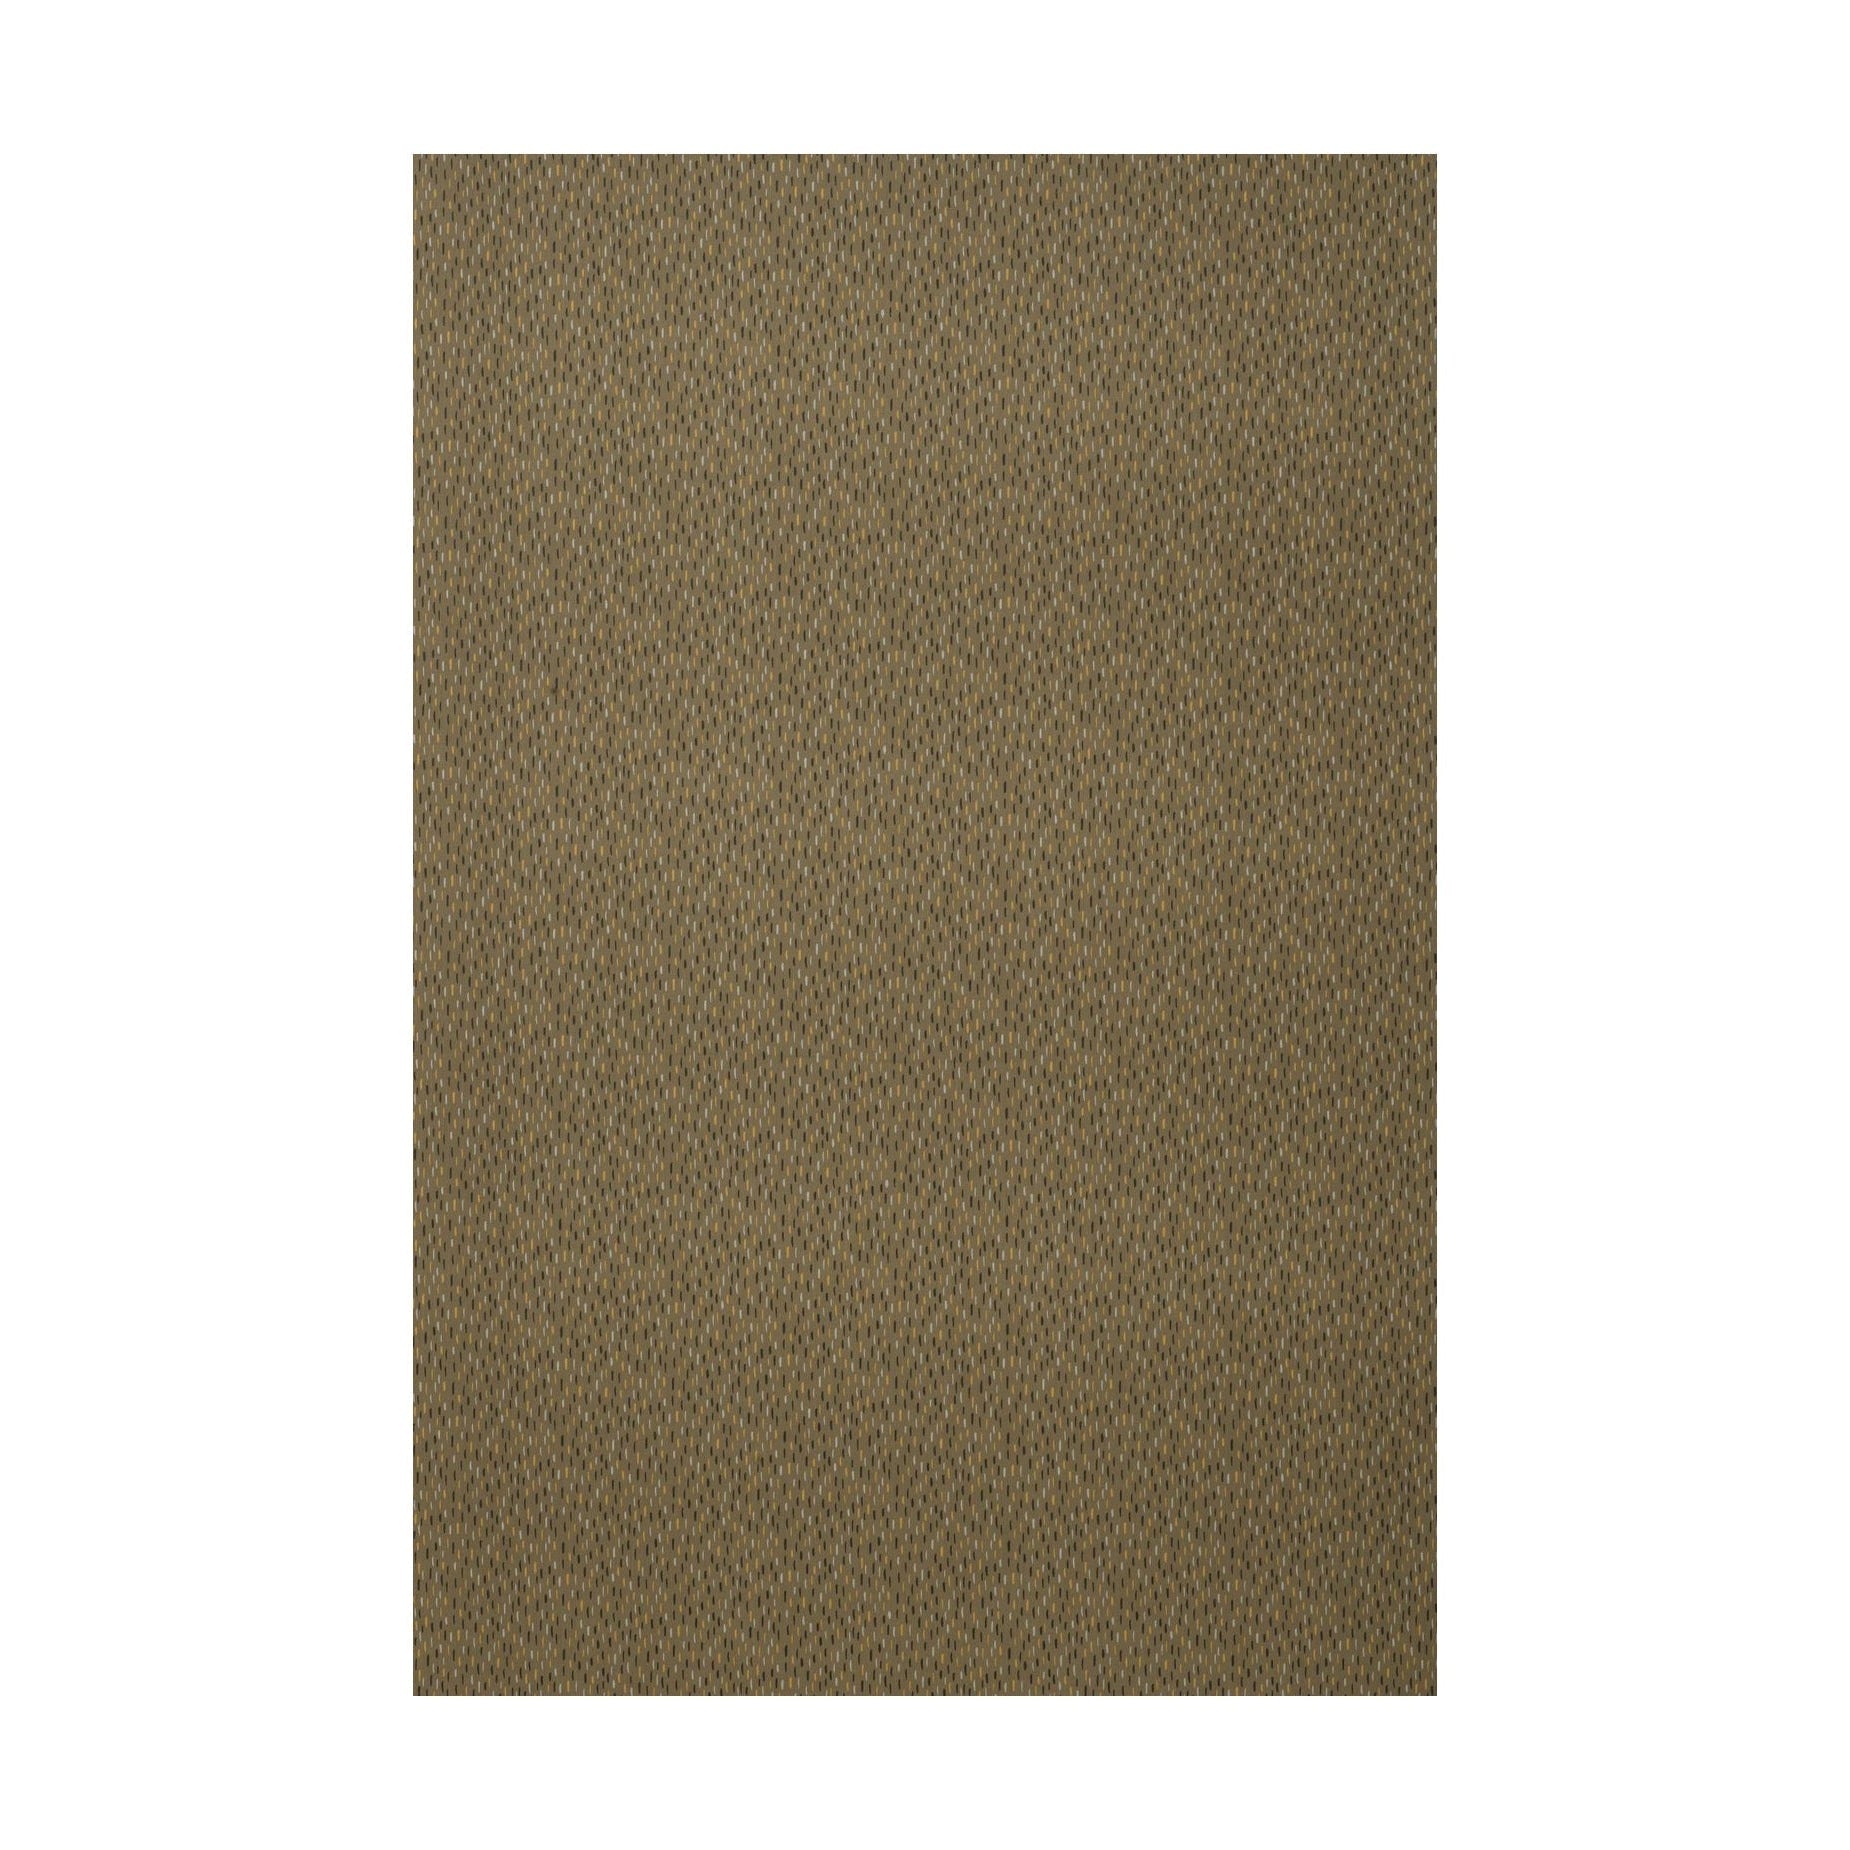 Spira Art Fabric Width 150 Cm (Price Per Meter), Brown